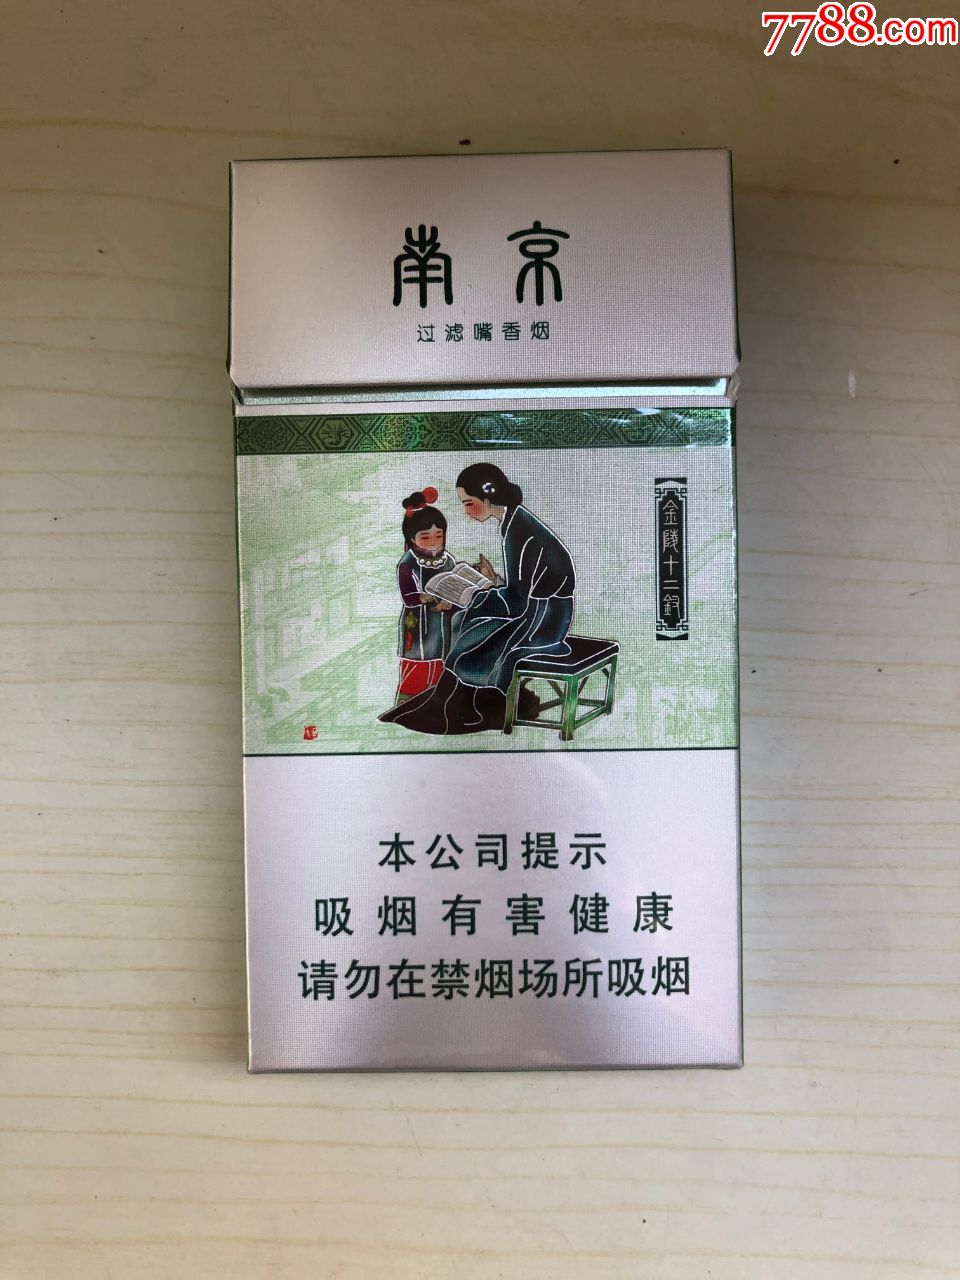 南京烟13元一盒图片